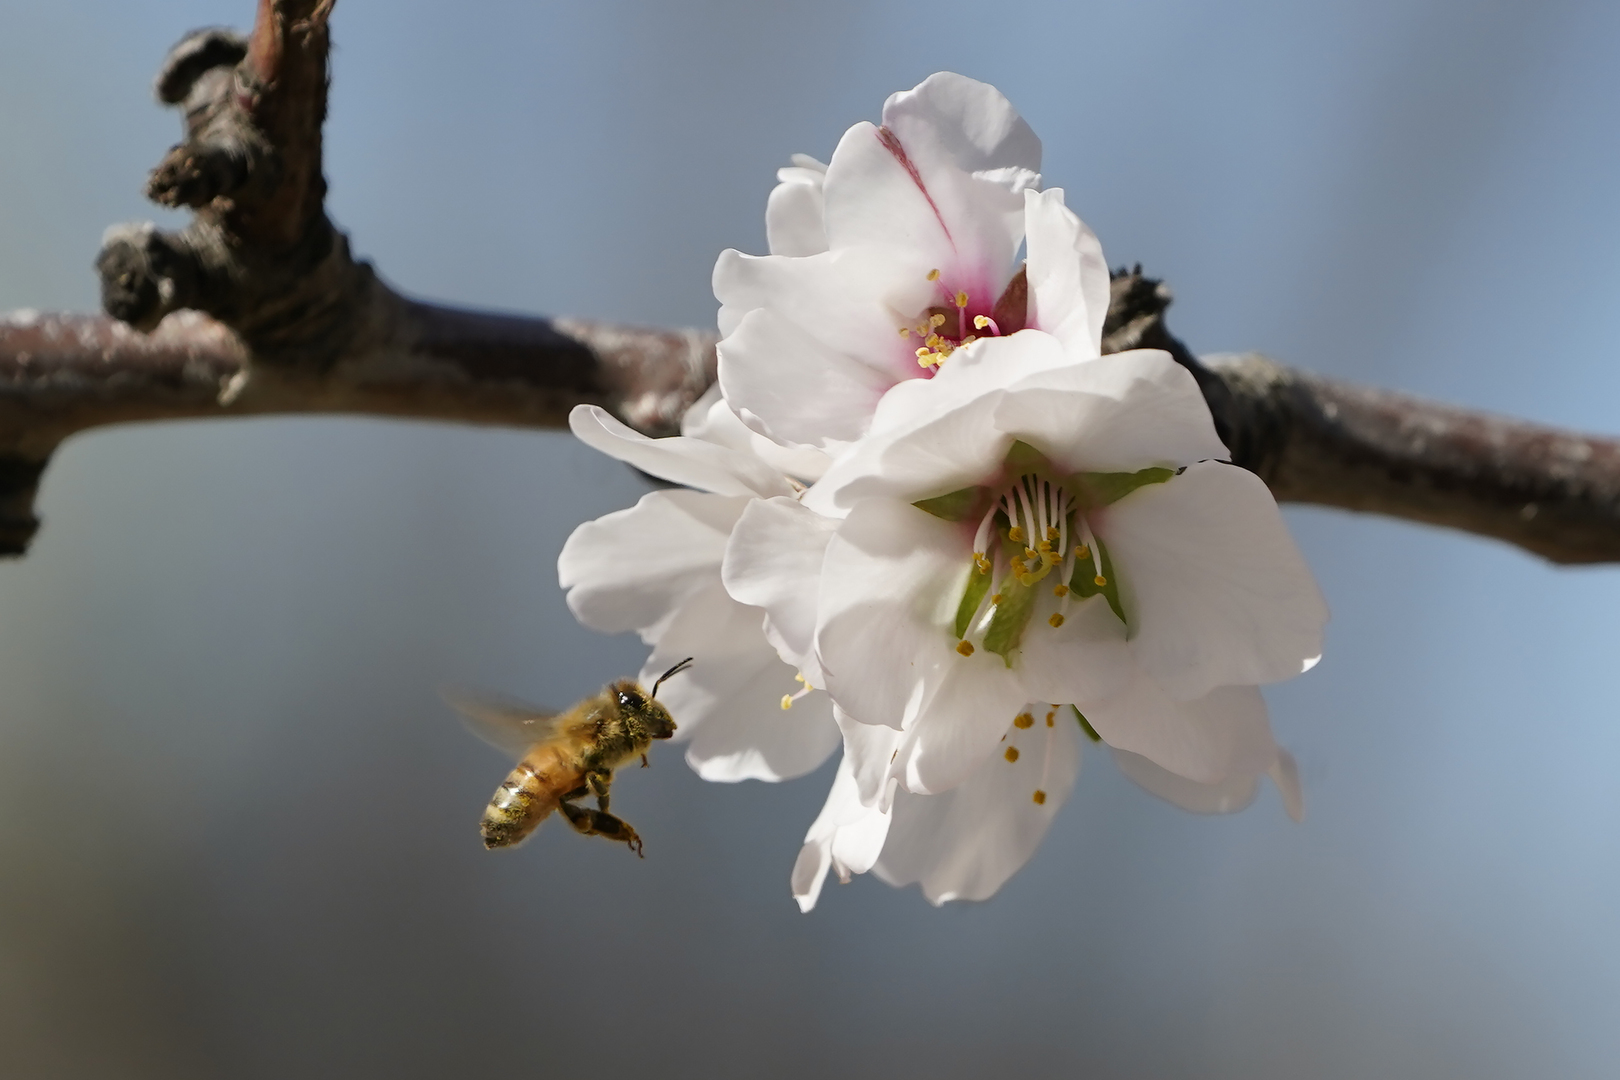 محكمة استئناف أمريكية: يمكن تصنيف النحل قانونا على أنه 